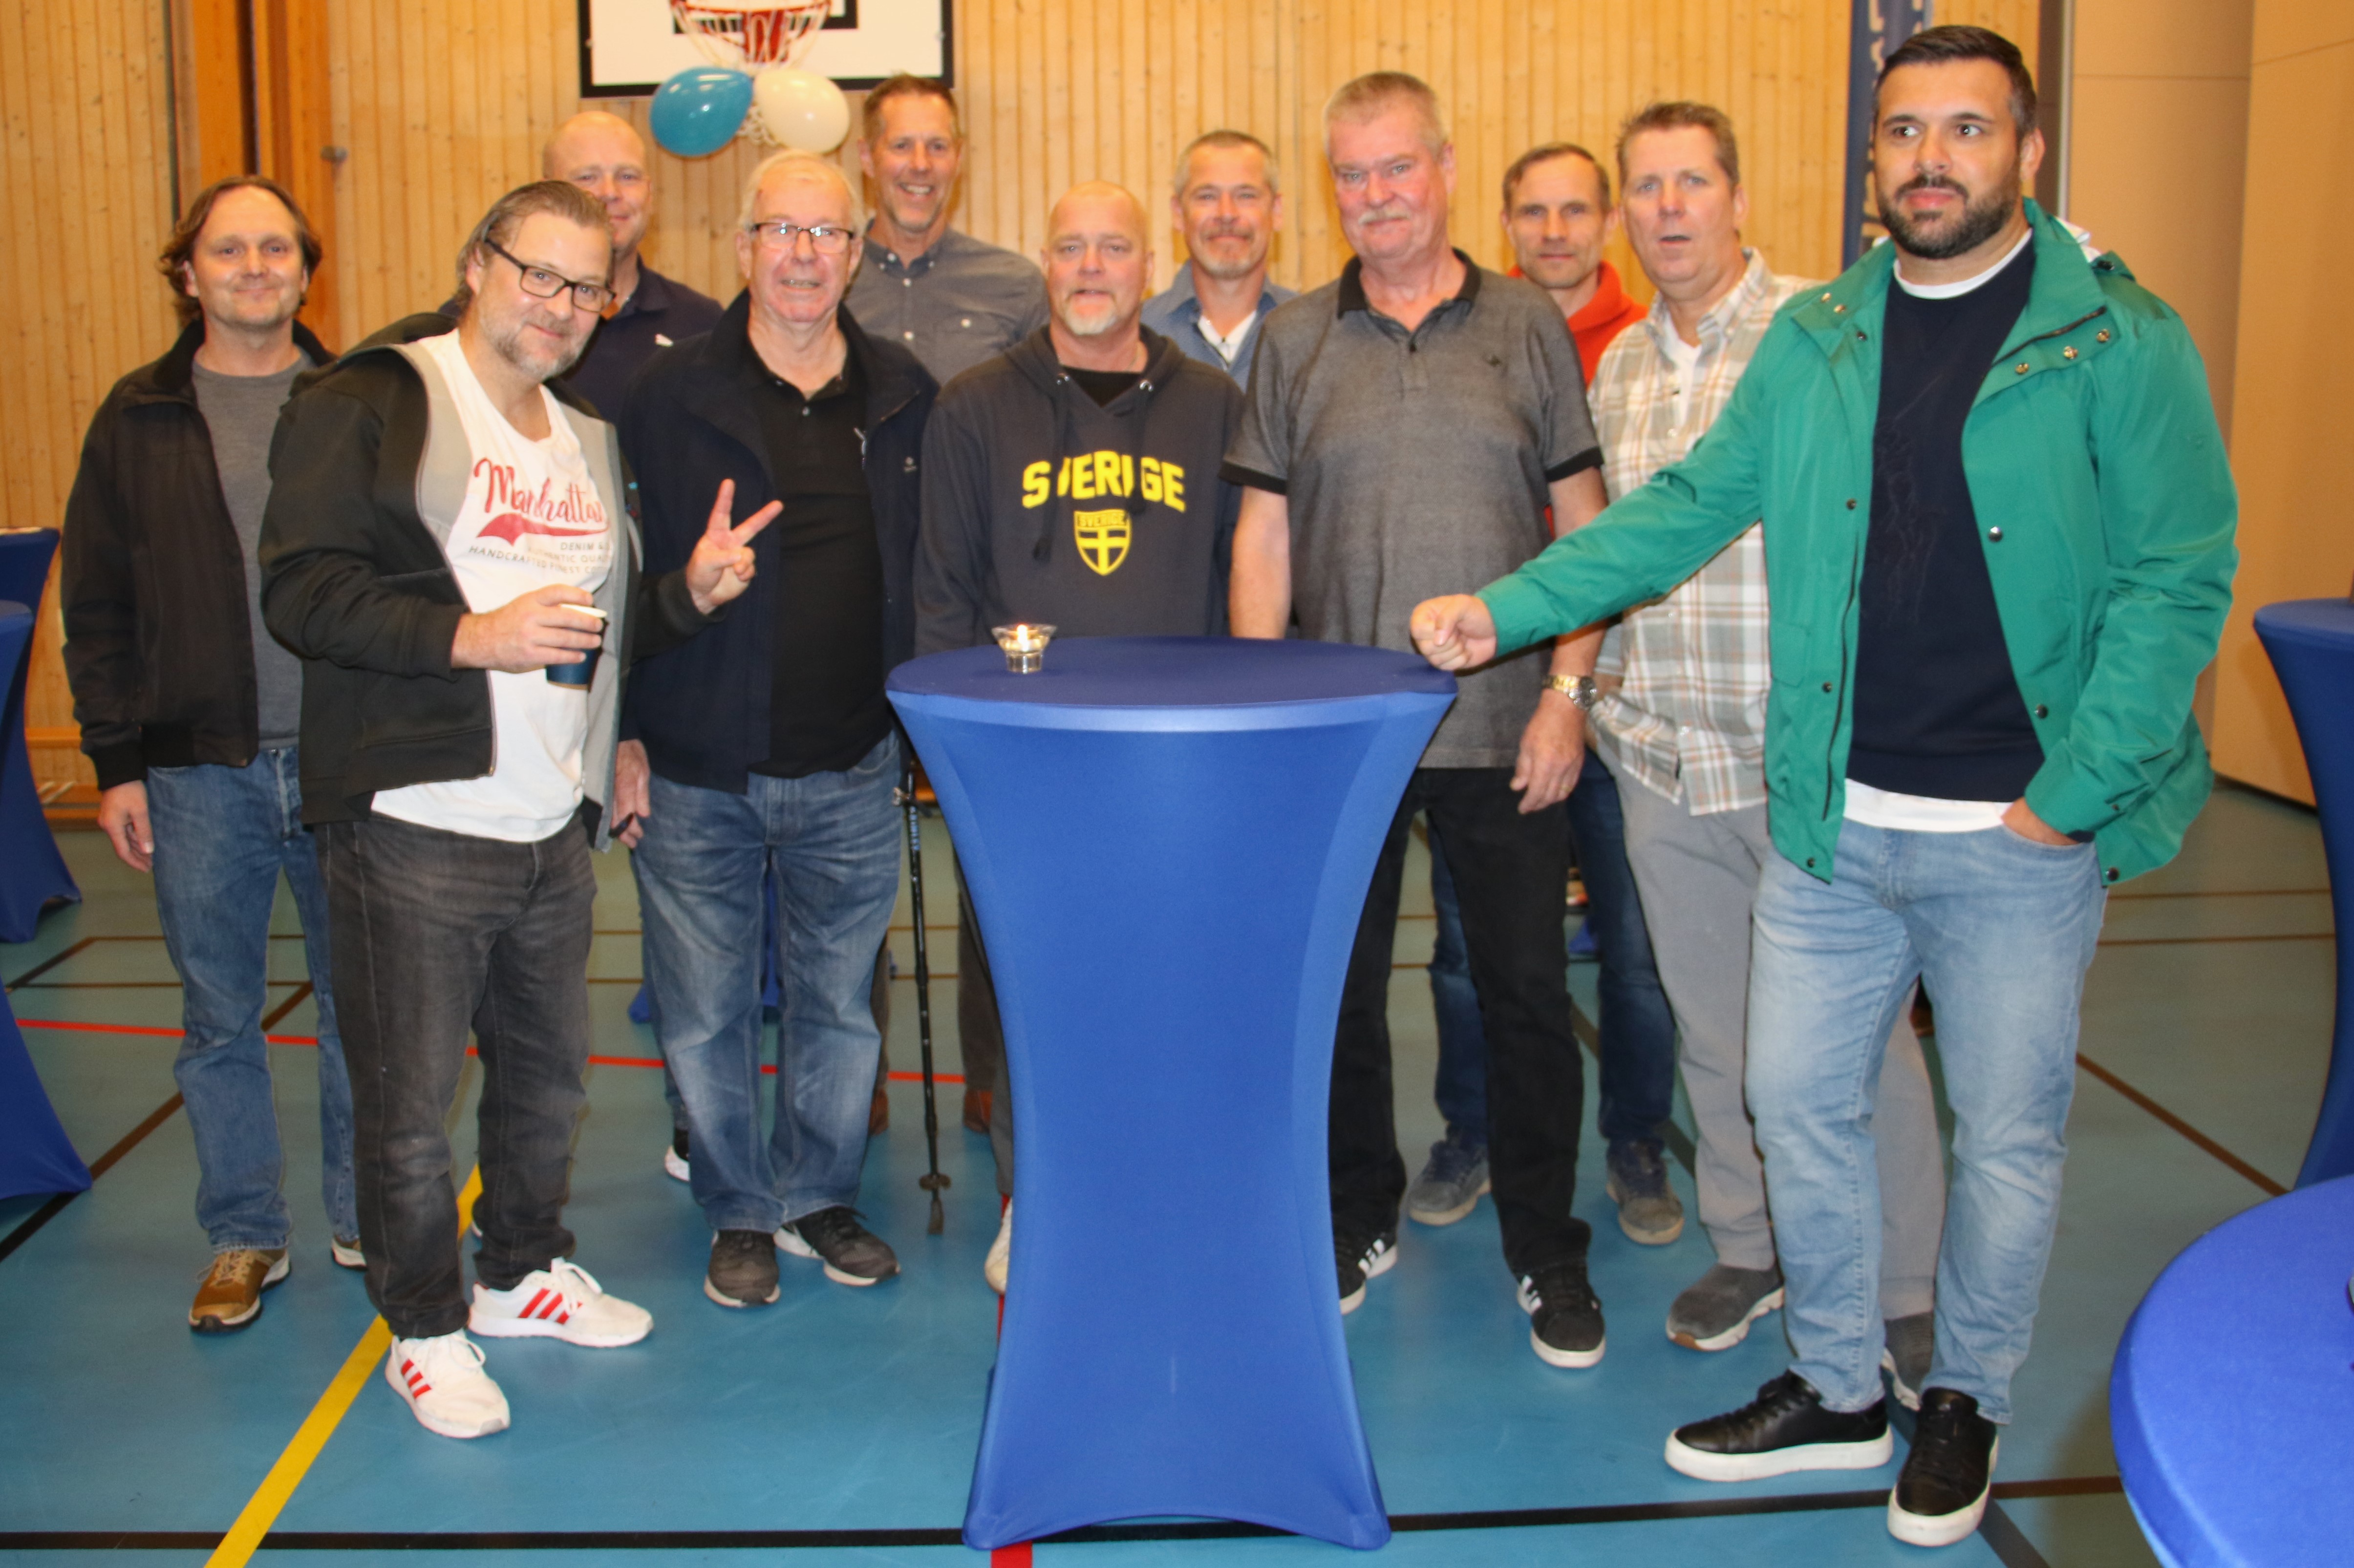 Gamla spelare och ledare: Niklas Pålsson, Rickard Grahn, Rickard Granat, Janne Hurtig, Mats Edsand, Håkan Isaksson, Ulf Palmqvist, Mats Palmqvist, Tobias Hammarstedt, Christer Grahn och Edmond Shala, som är lagets nuvarande tränare.